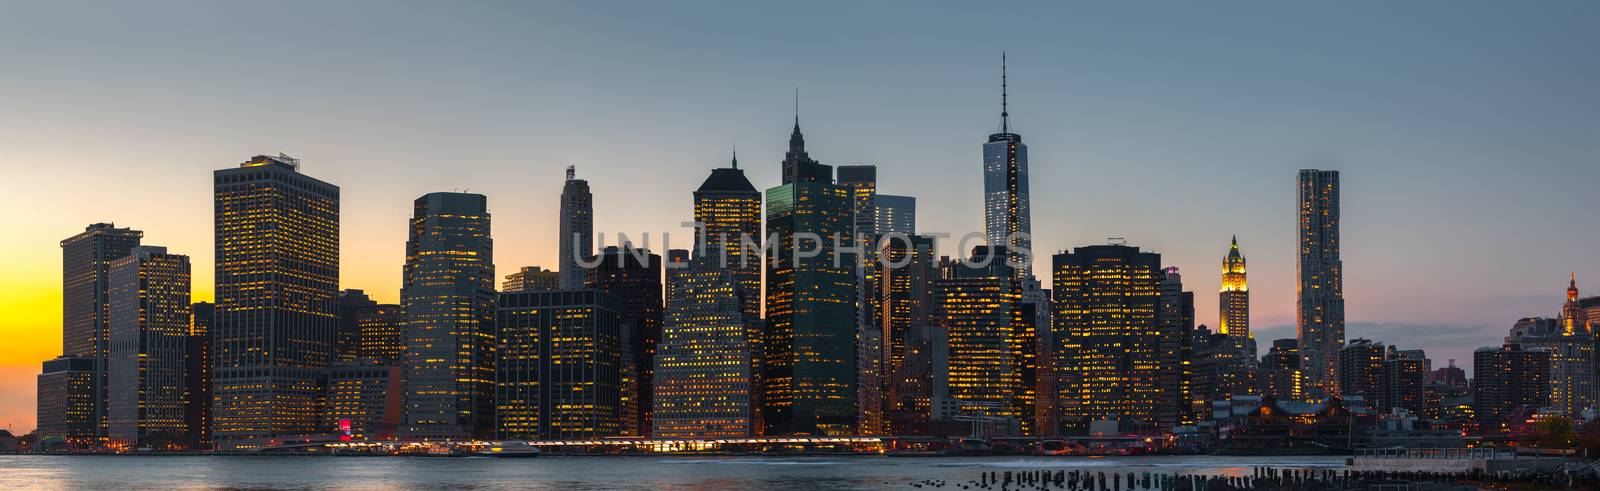 New York City skyline panorama by palinchak